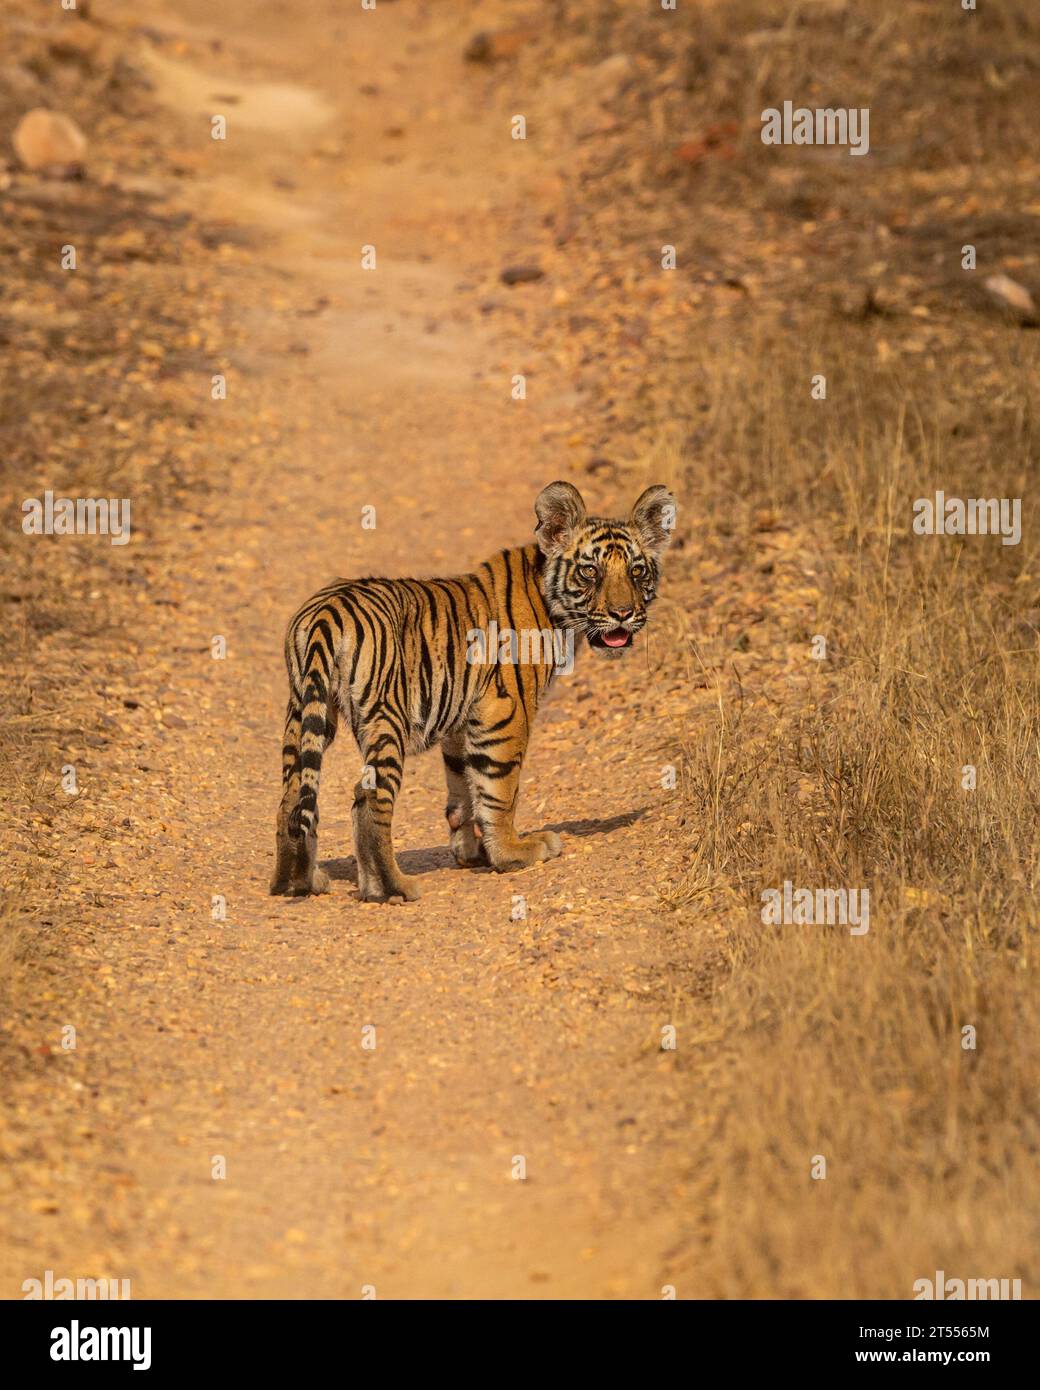 tigre du bengale sauvage ou panthera tigris mignon petit gras minuscule expression du visage de petit ourson sans contact avec les yeux de la mère sur la piste safari en forêt de route à bandhavgarh Banque D'Images